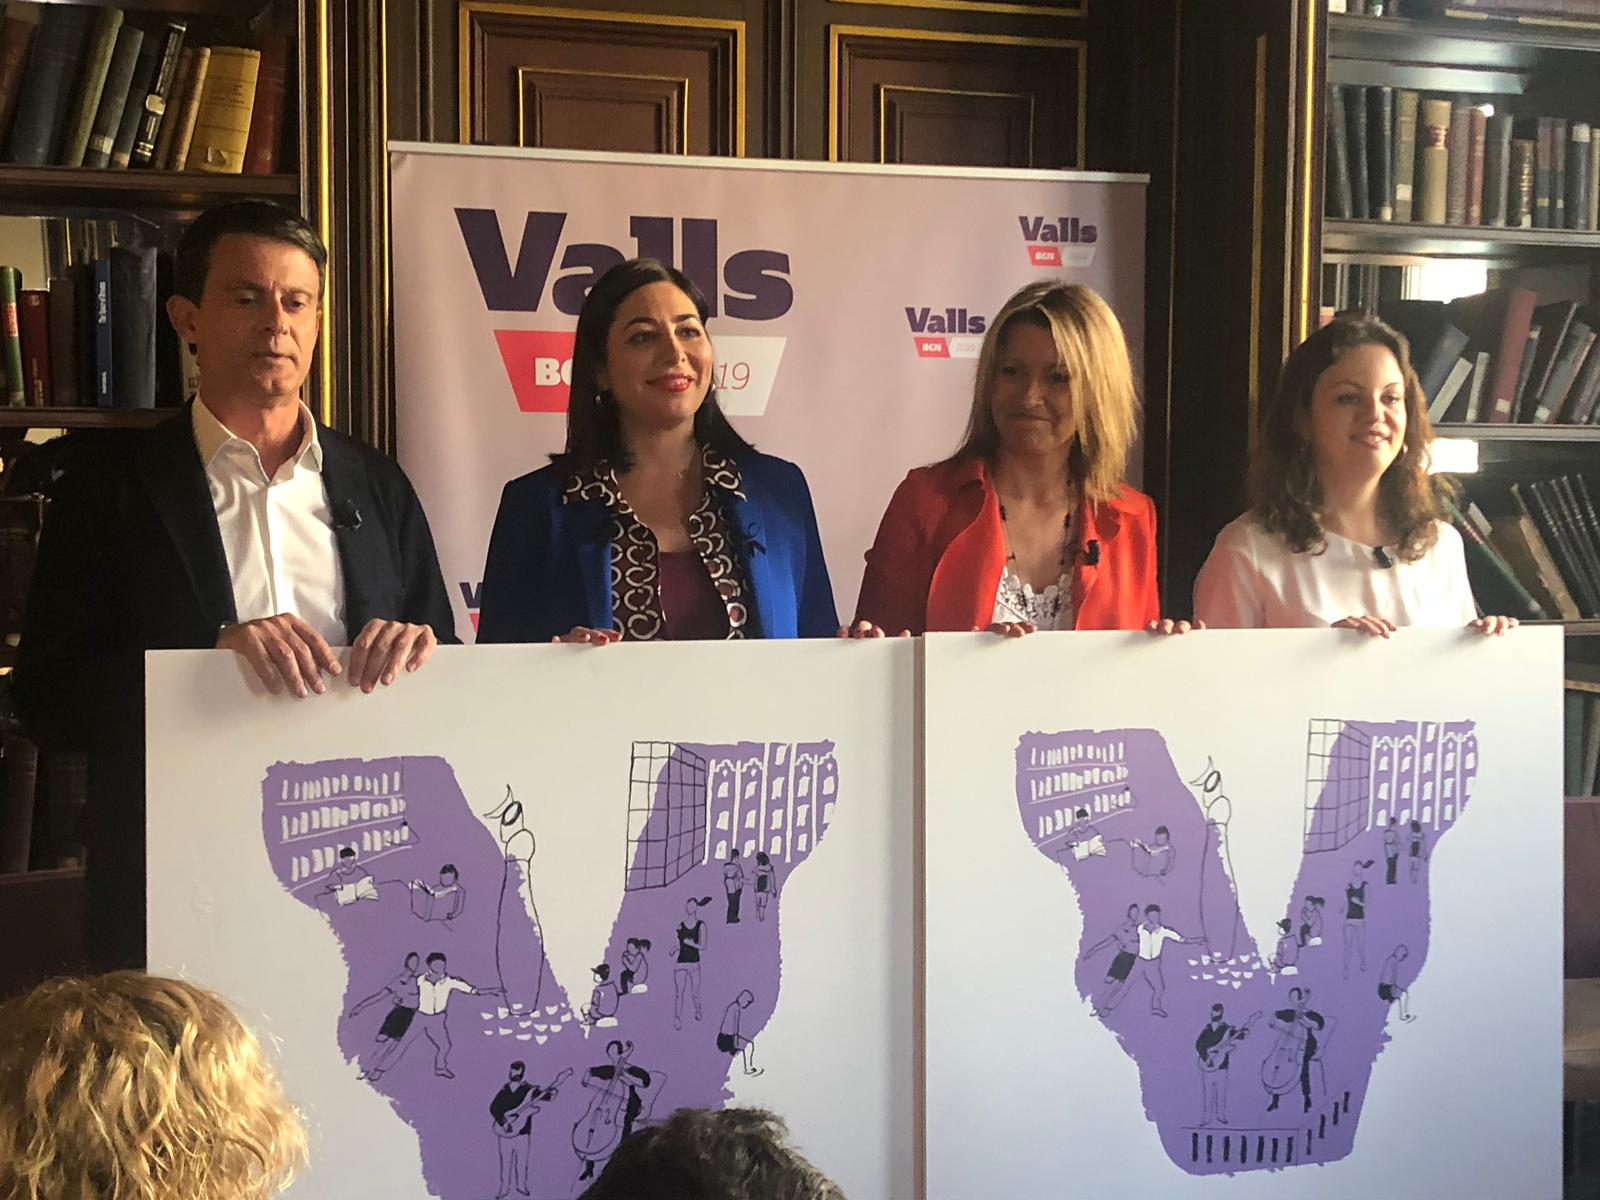 Valls aprofita el 8-M per defensar "una dona en particular": Montserrat del Toro